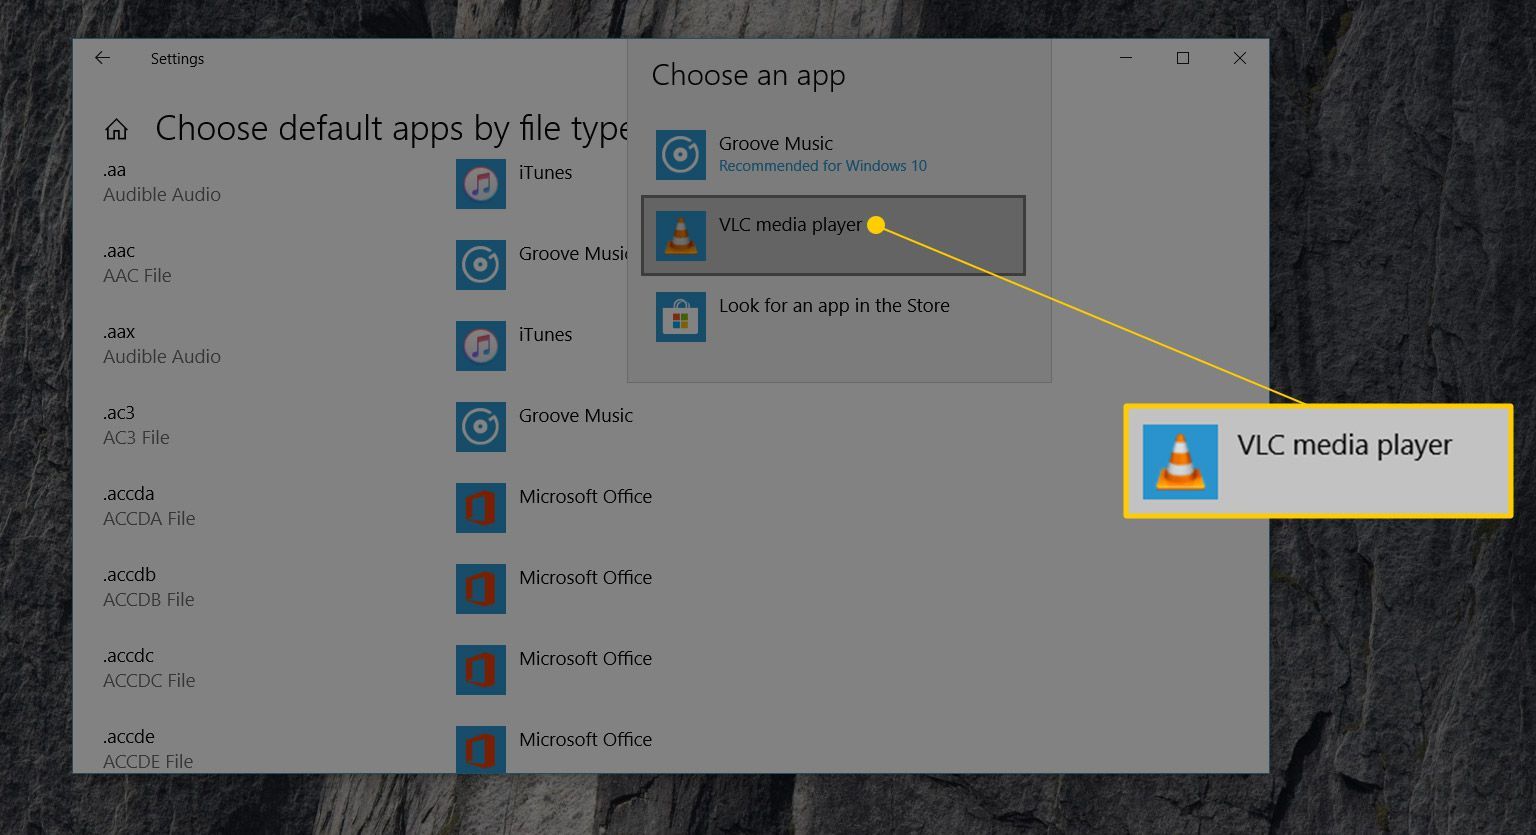 Значок медиапроигрывателя VLC в Подменю выбора приложения в окне Выбор приложений по умолчанию по типу файла